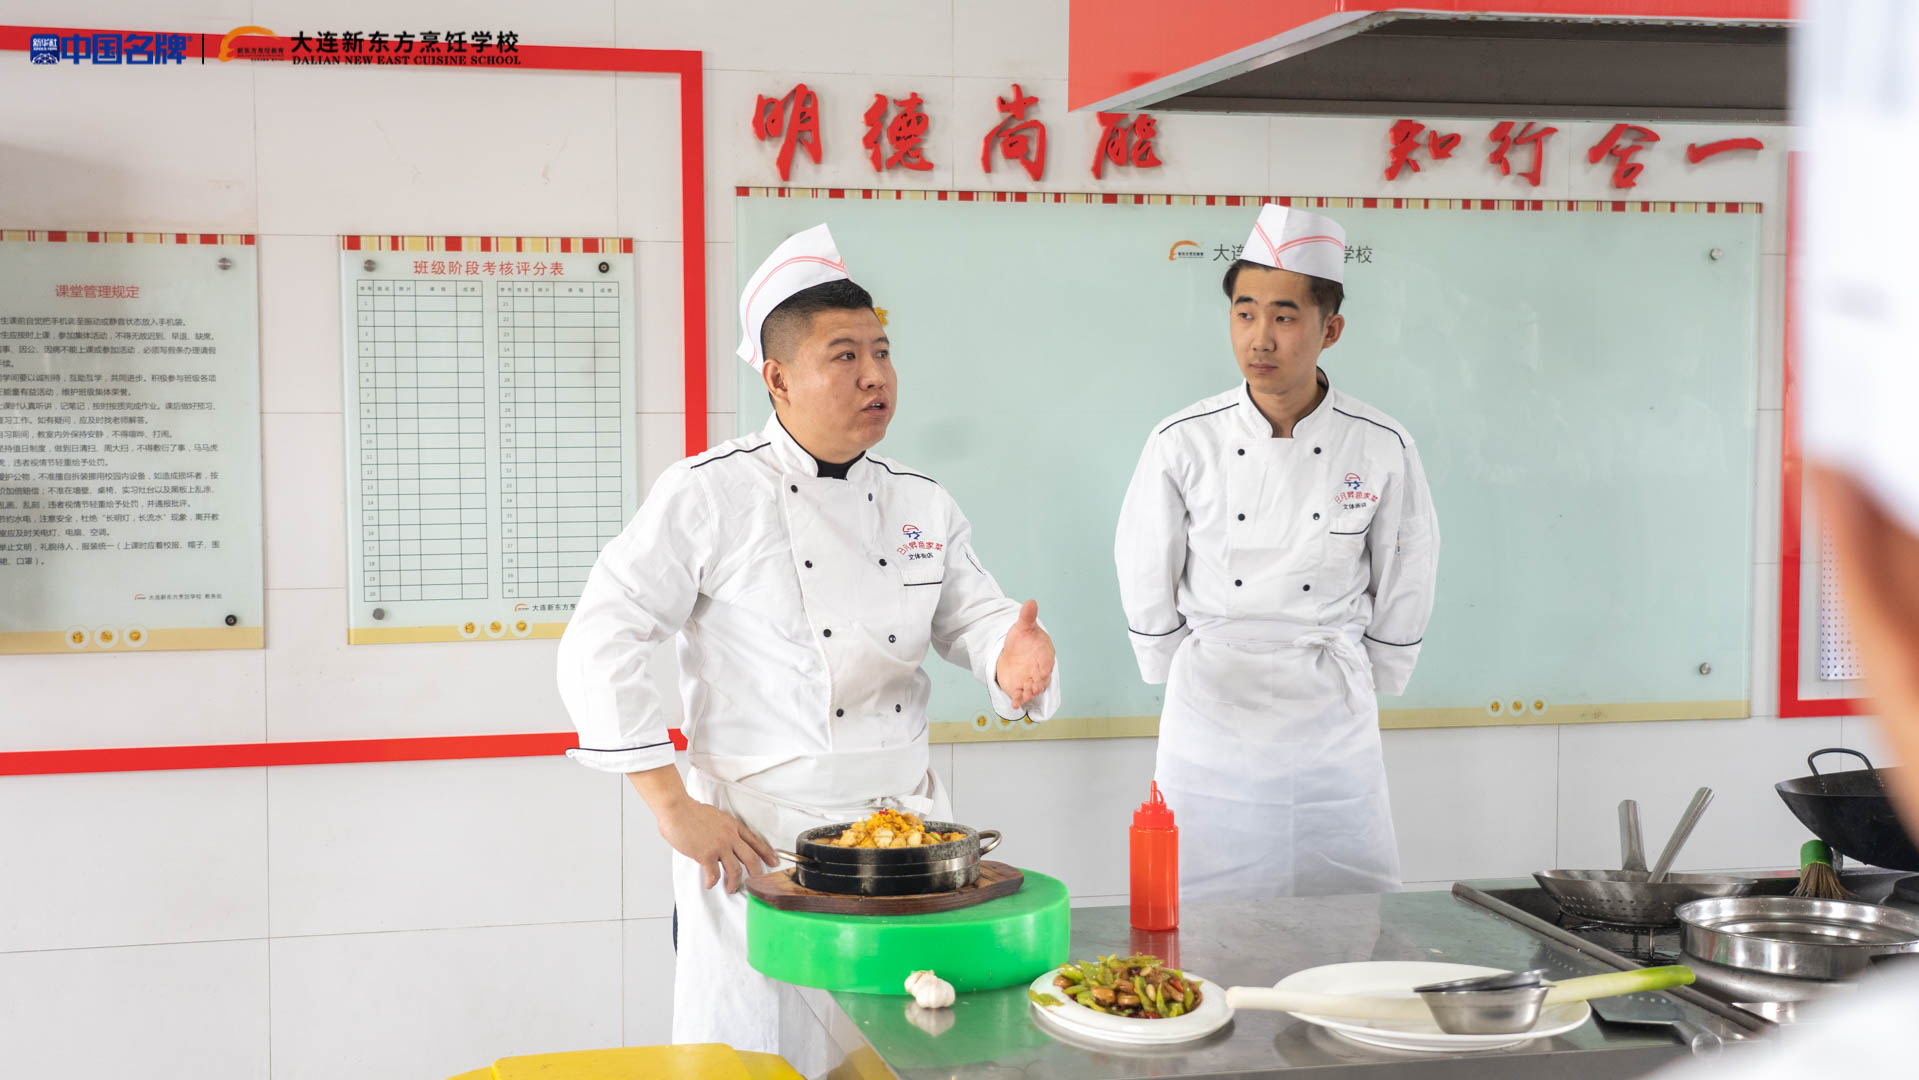 味蕾的觉醒——日月昇张旭厨师长走进大连新东方烹饪学校的美食探索之旅